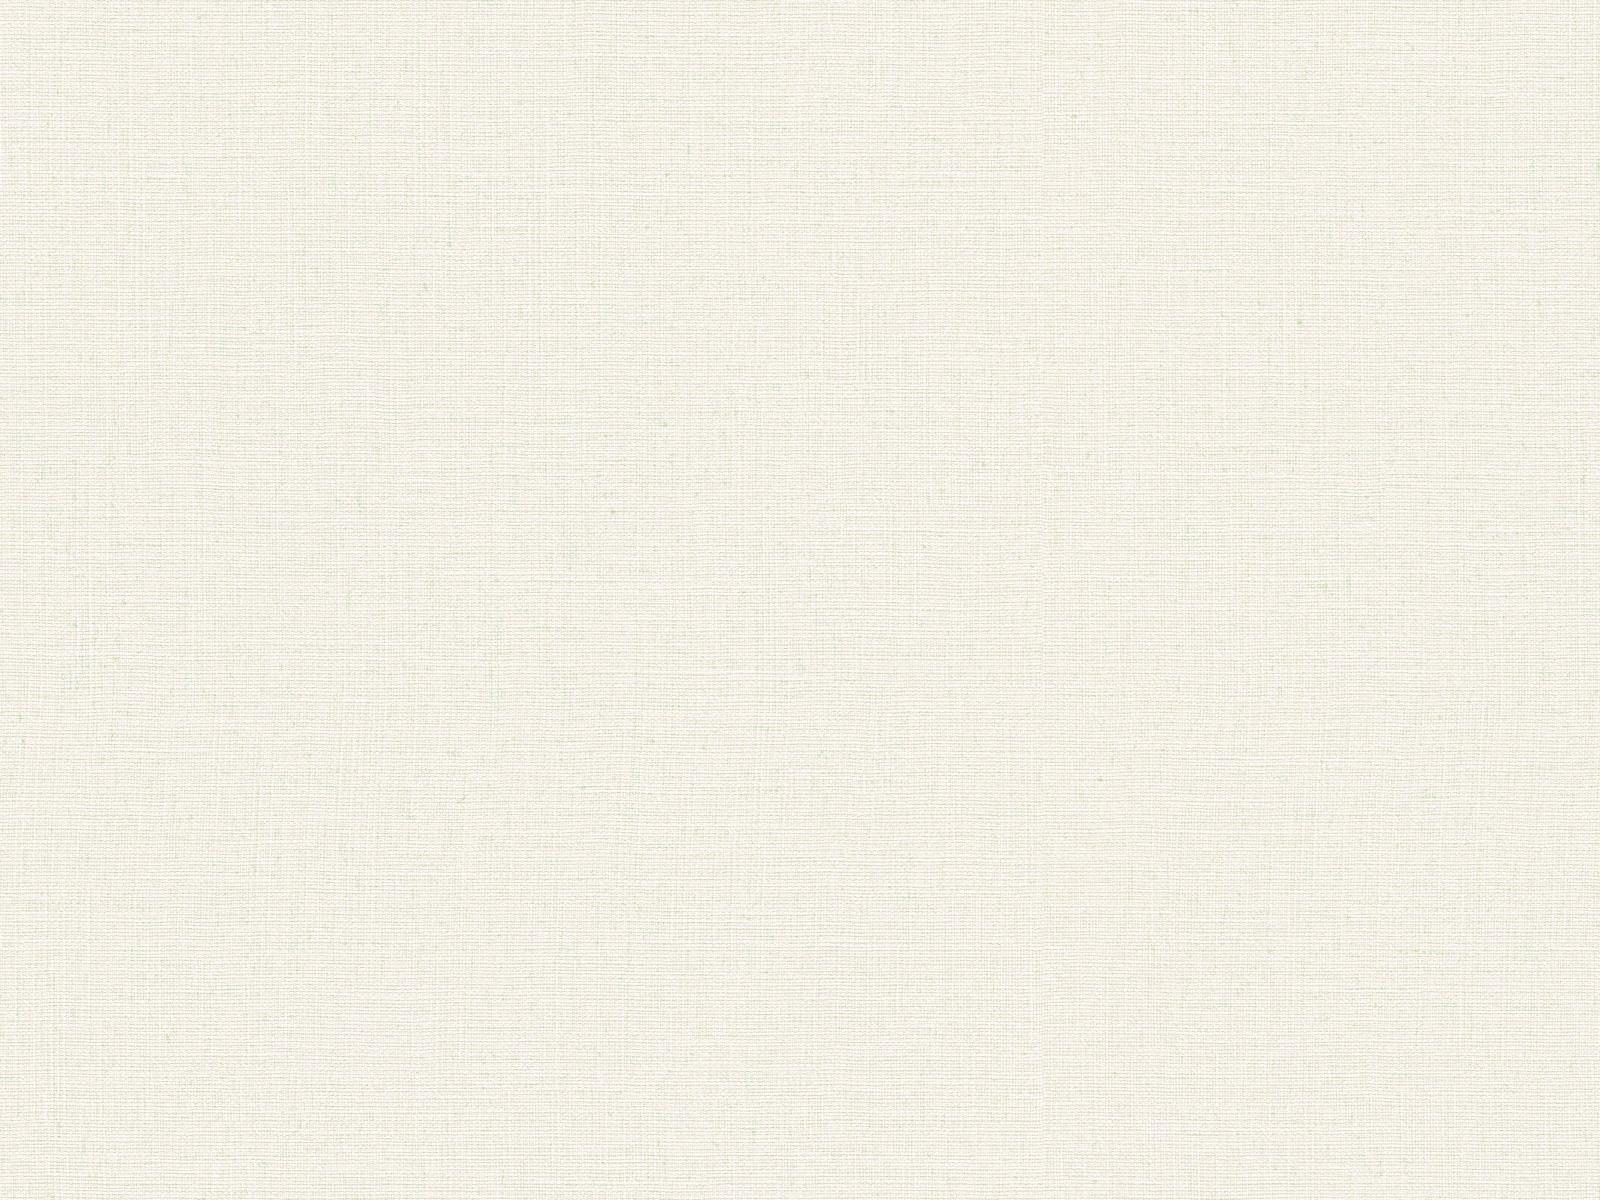 Vliesová tapeta s prirodzenou textilnou štruktúrou v bielej farbe, ER-601634